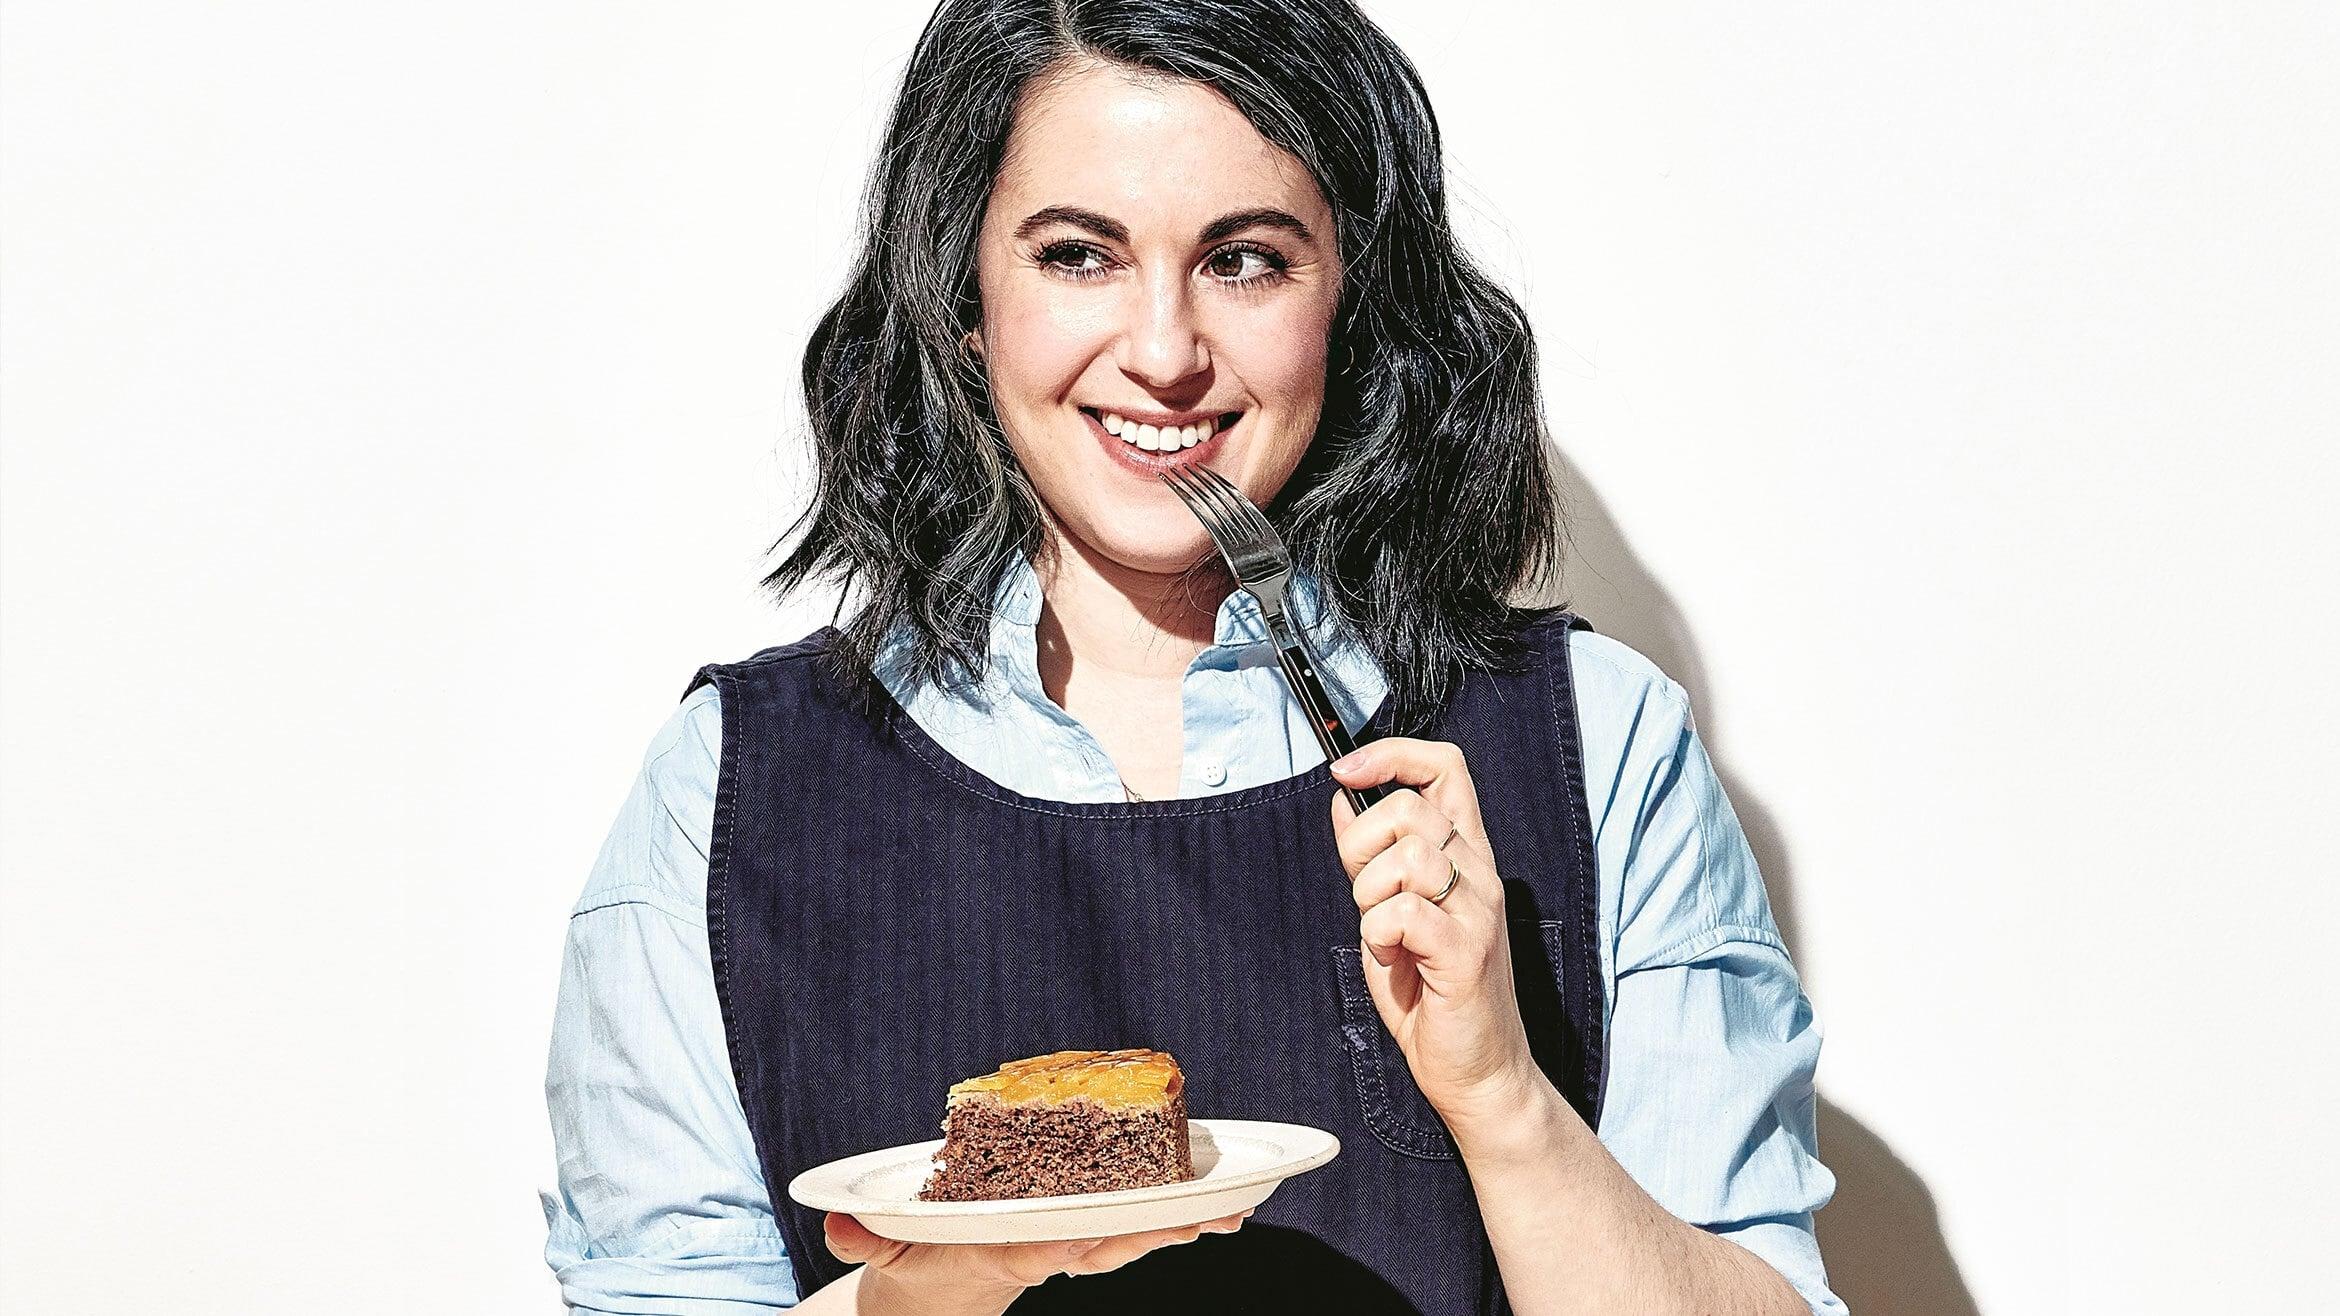 Dessert Person with Claire Saffitz backdrop